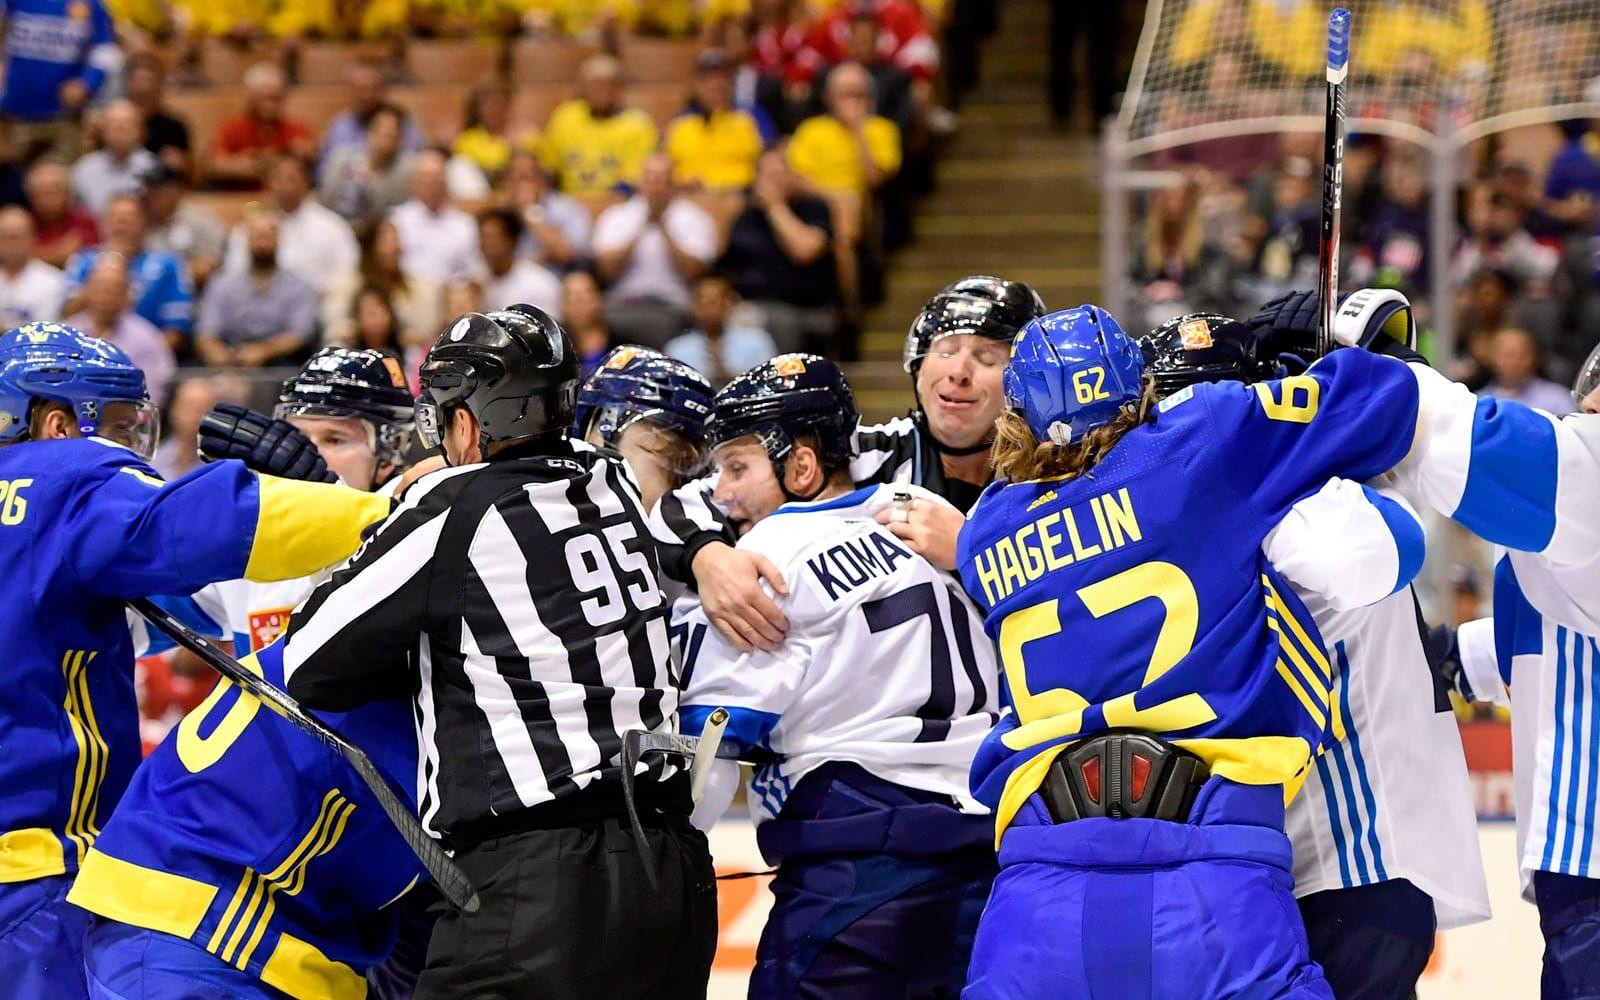 Heta känslor, som det ska vara, när Sverige och Finland möts i ishockey. Foto: Bildbyrån